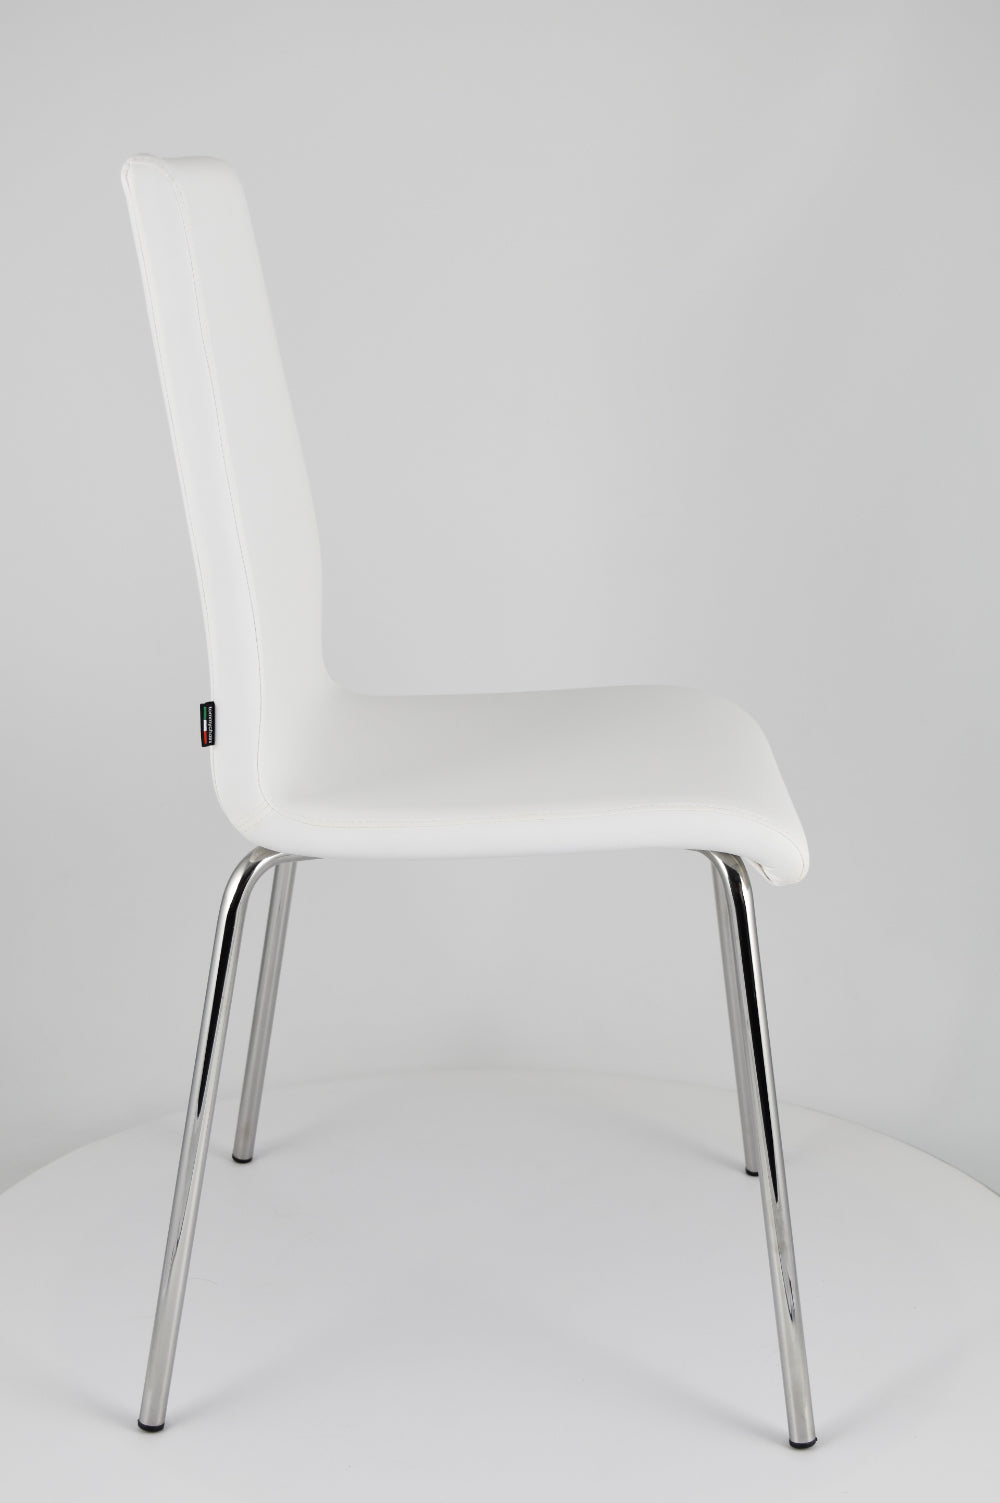 Tommychairs - Set 2 sillas Madrid con Patas de Acero Cromado y Asiento en Madera Multicapa, tapizado en Polipiel Color Blanco